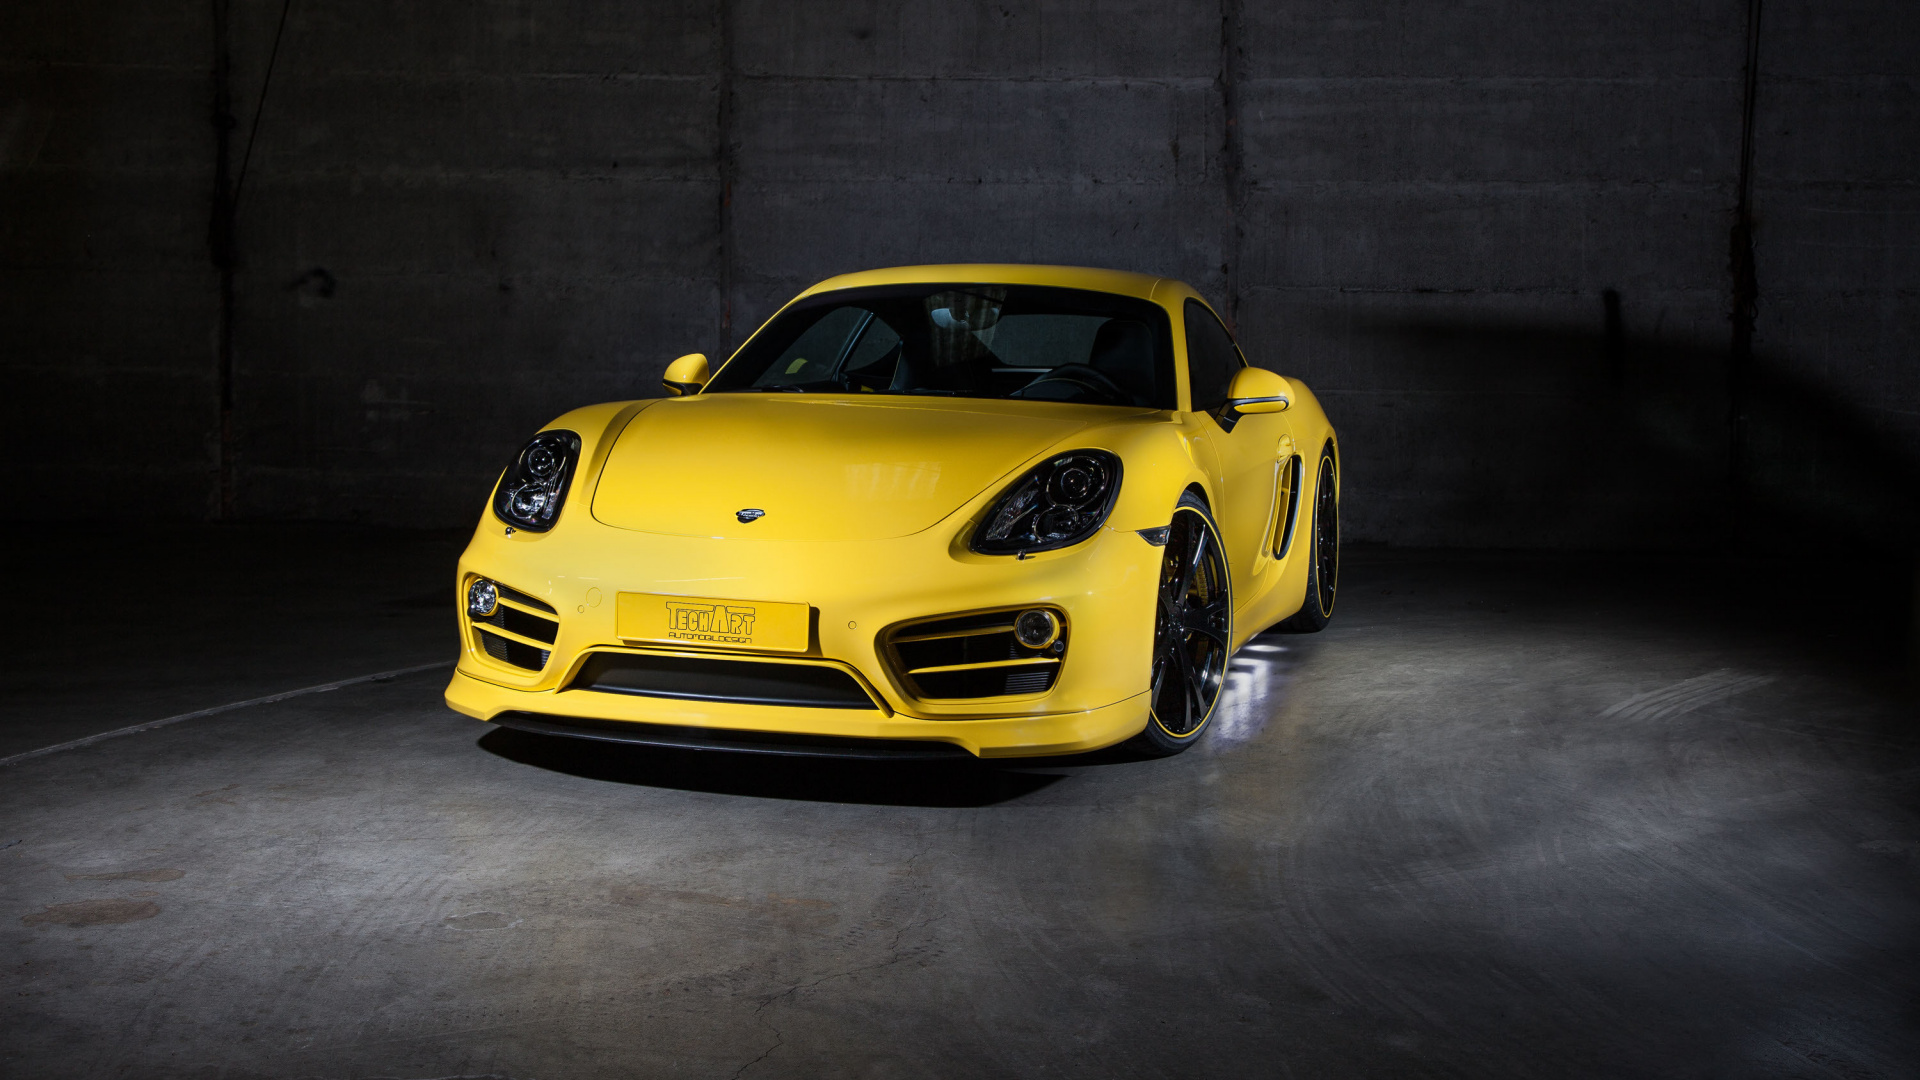 Yellow Porsche 911 Parked in a Garage. Wallpaper in 1920x1080 Resolution